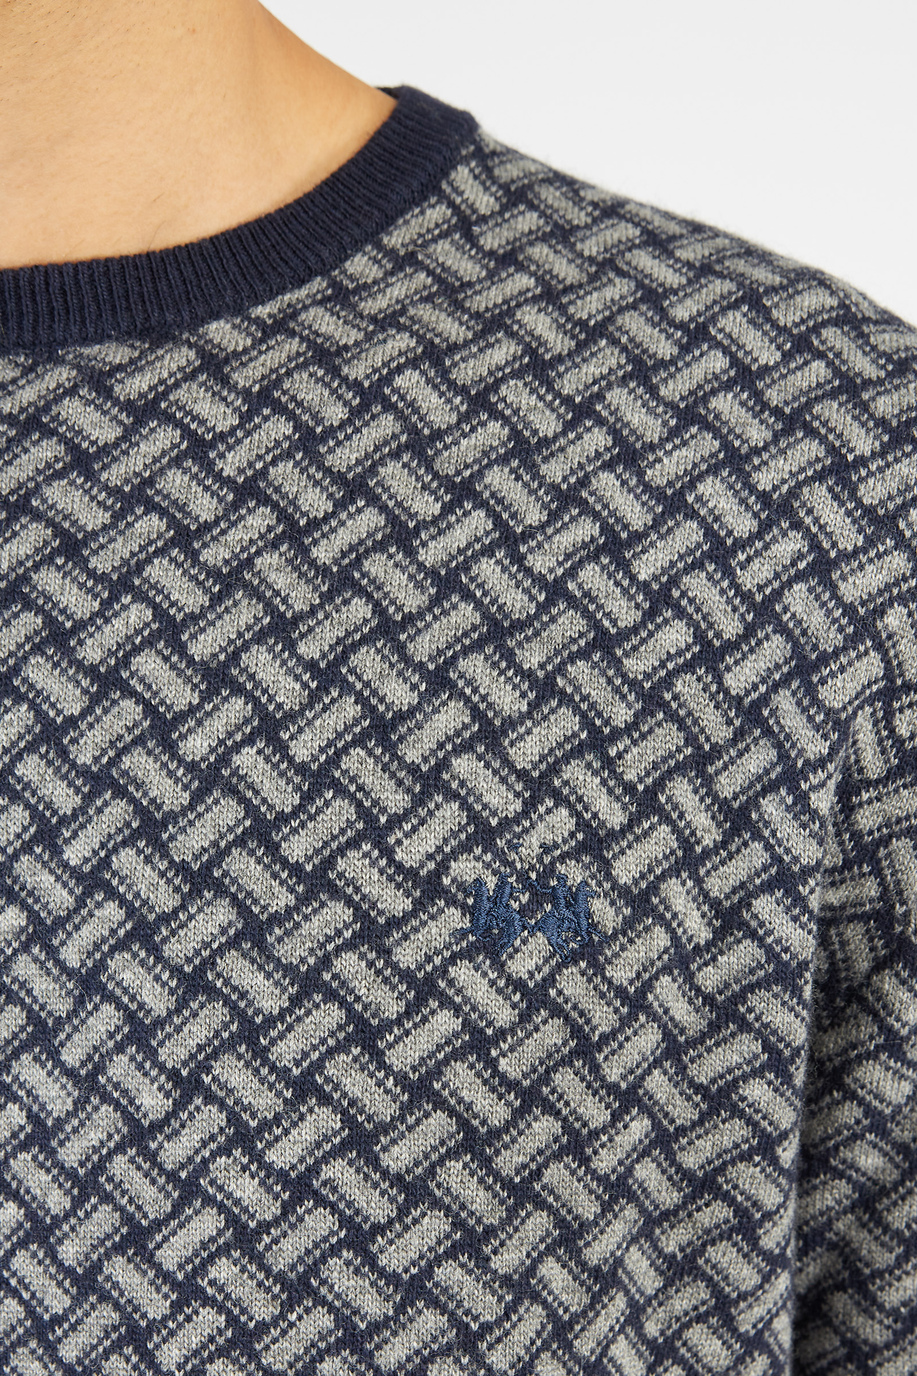 Maglia uomo Argentina maniche lunghe girocollo misto lana merino cashmere regular fit - Lane pregiate | La Martina - Official Online Shop